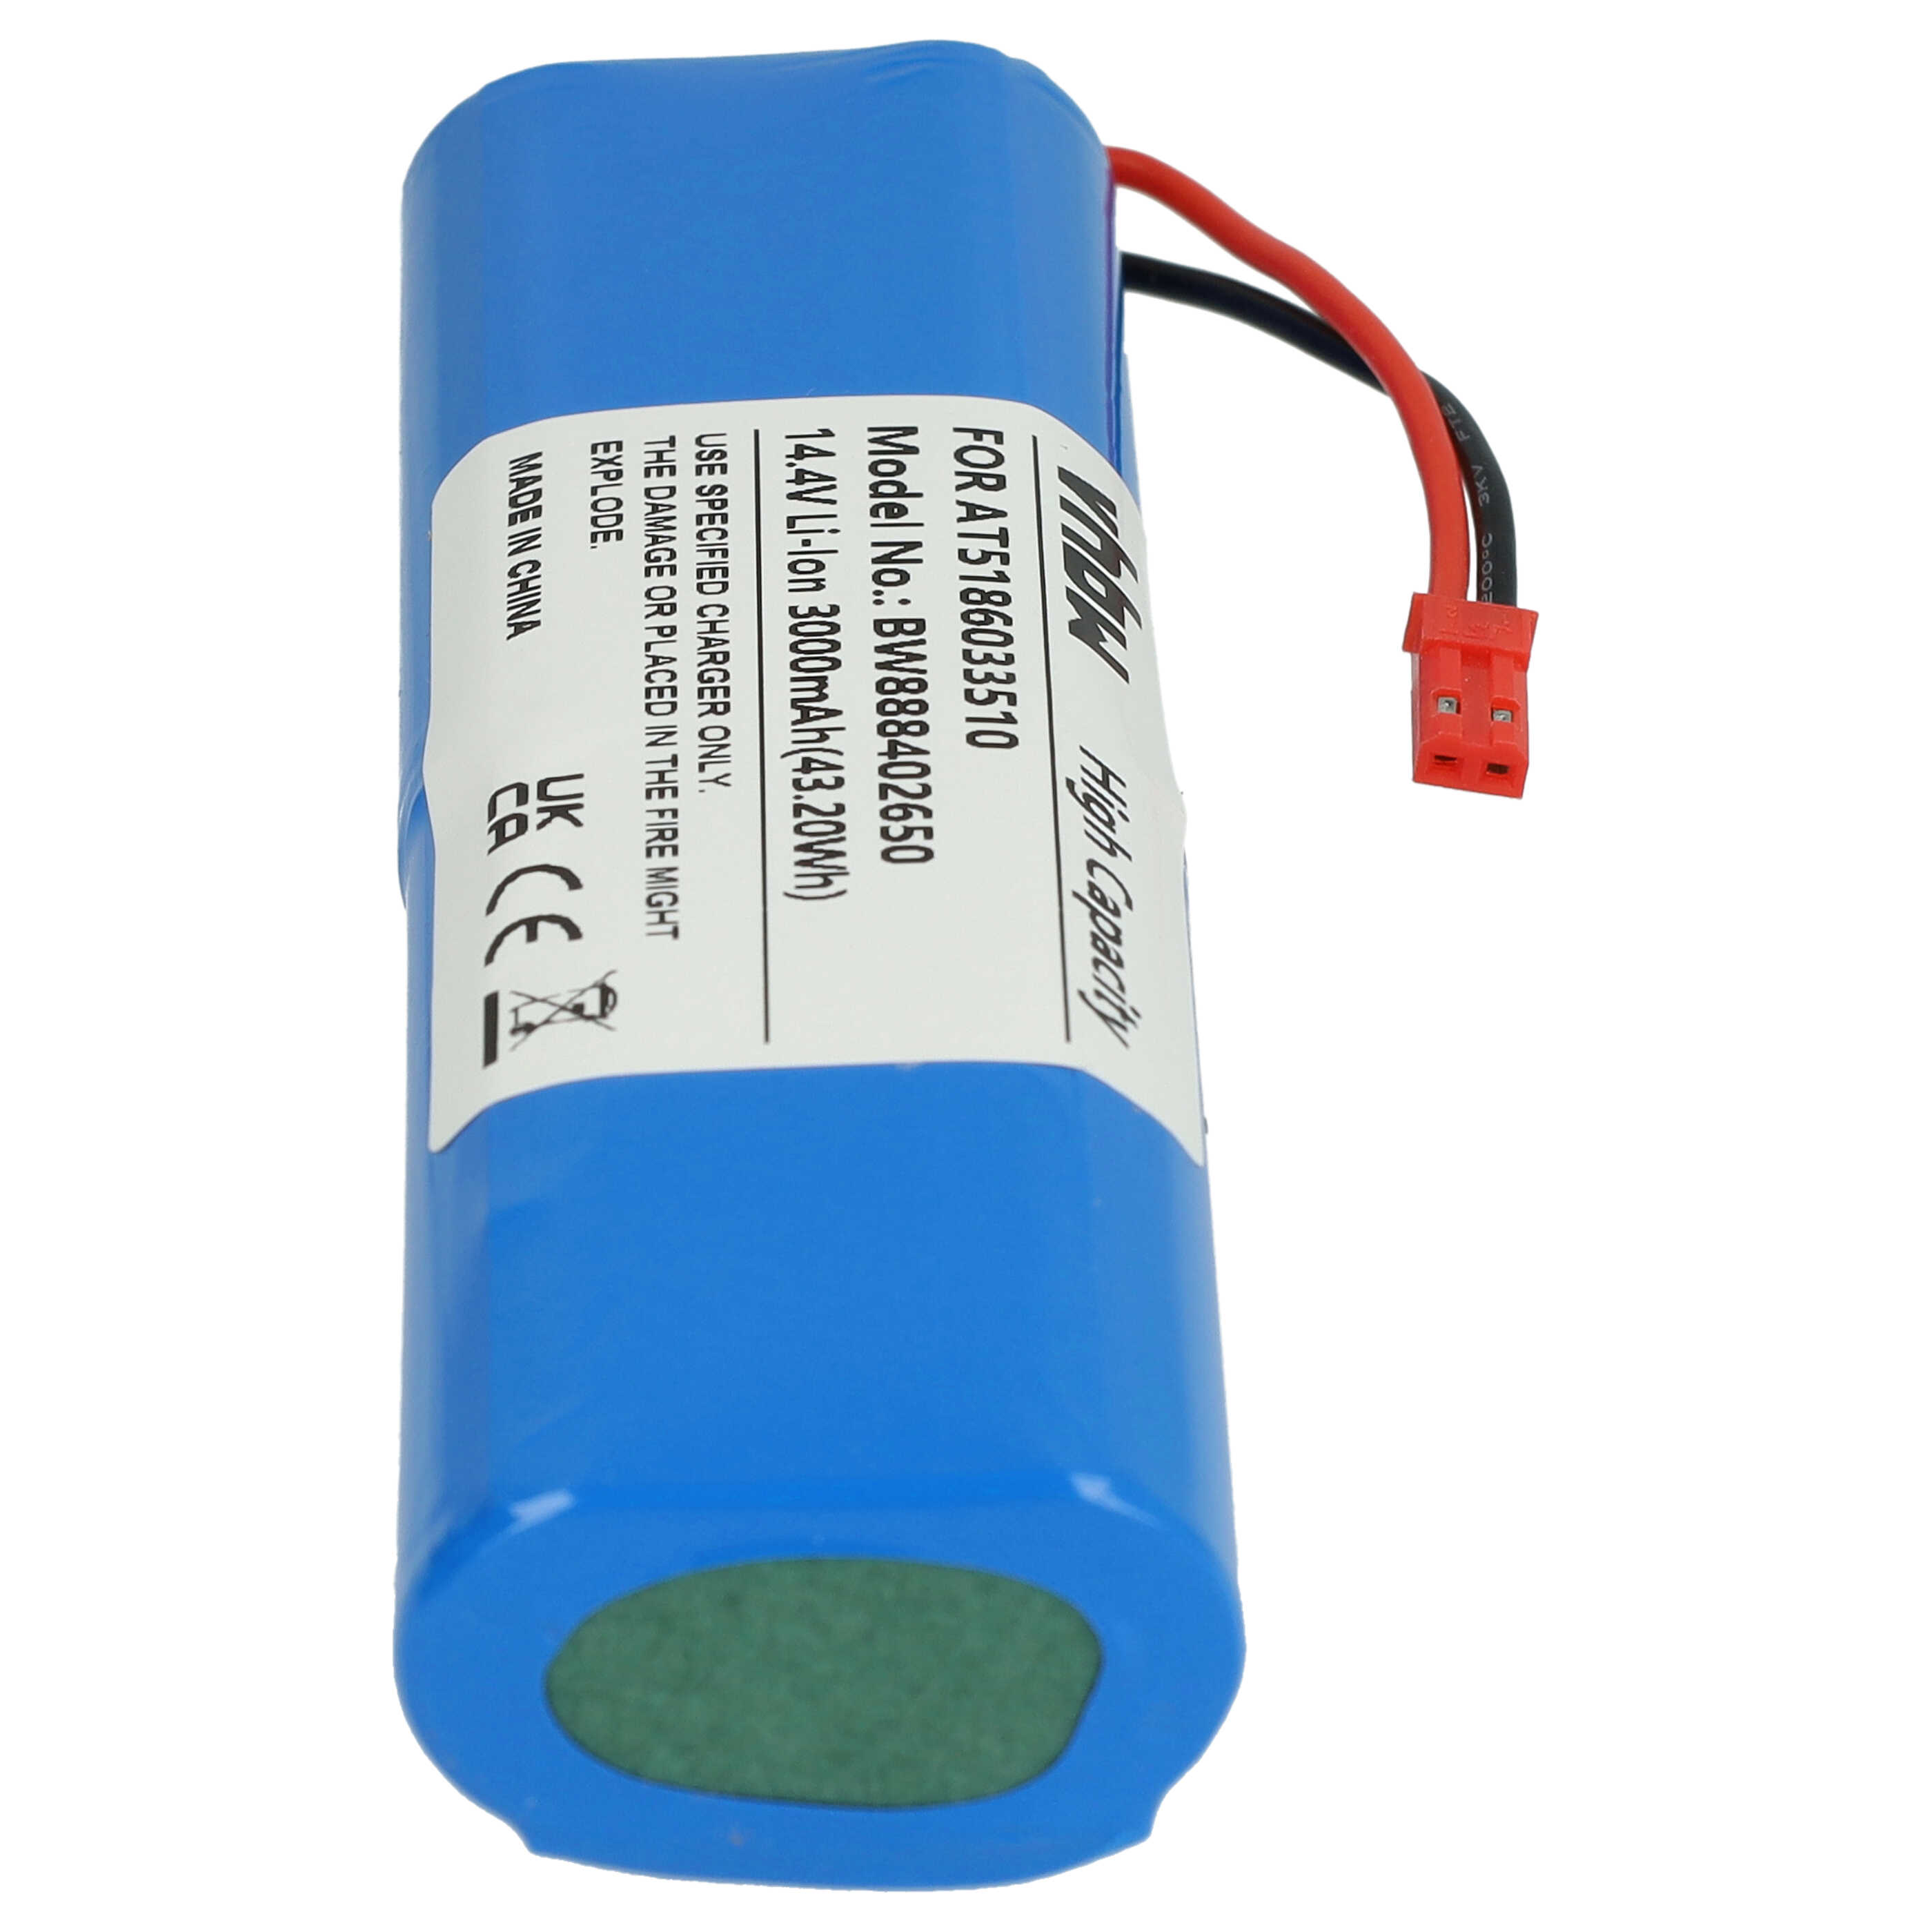 Batterie remplace Ariete AT5186033510 pour robot aspirateur - 3000mAh 14,4V Li-ion